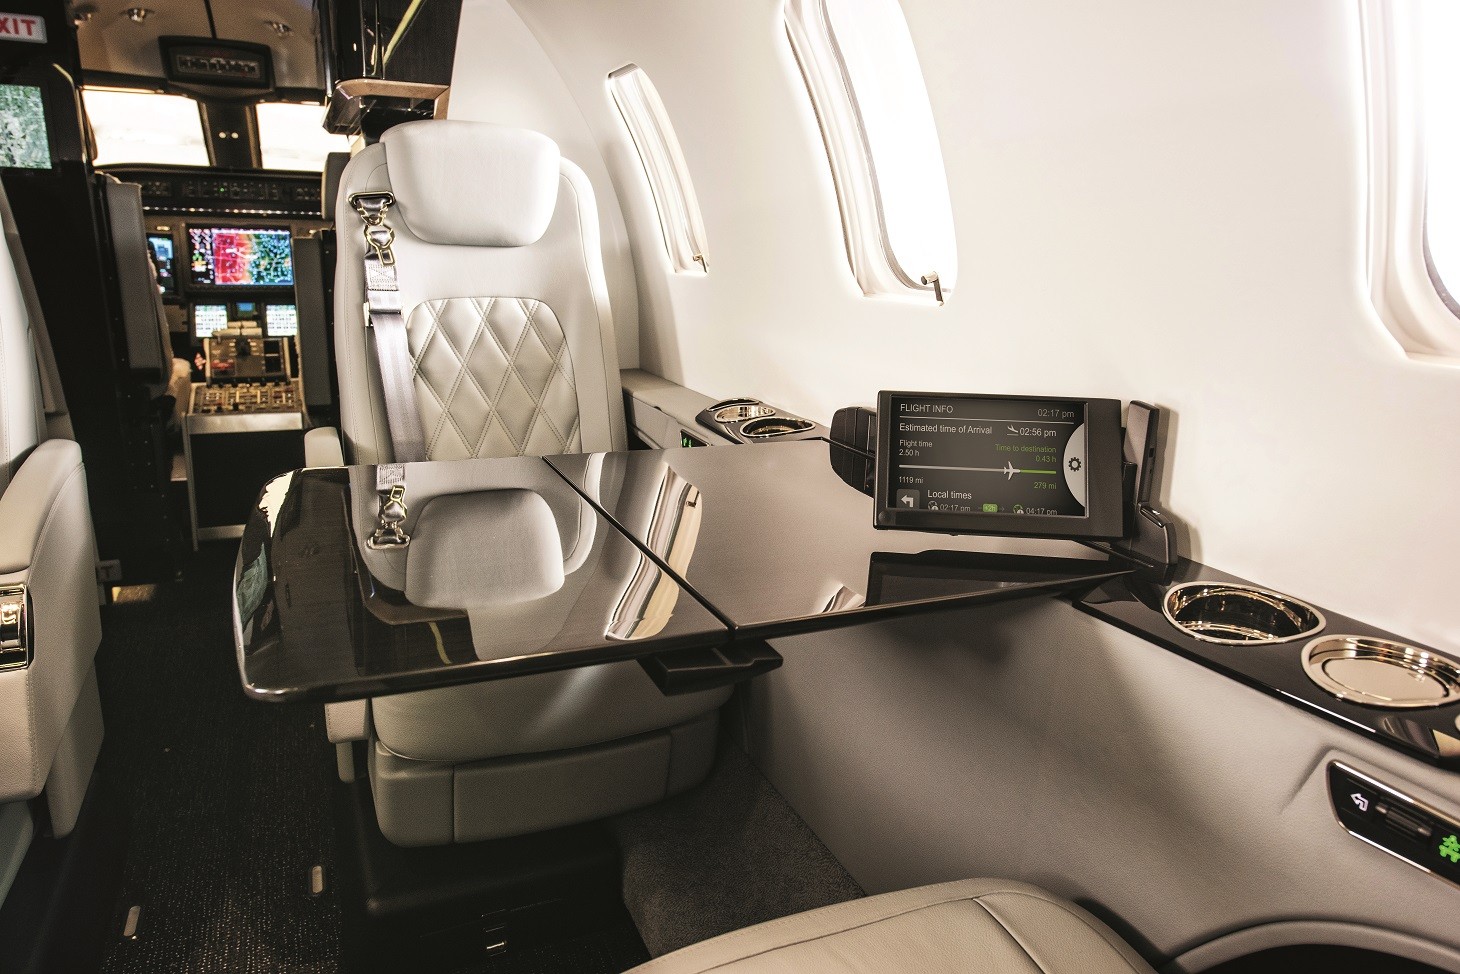 The Learjet 75 cabin